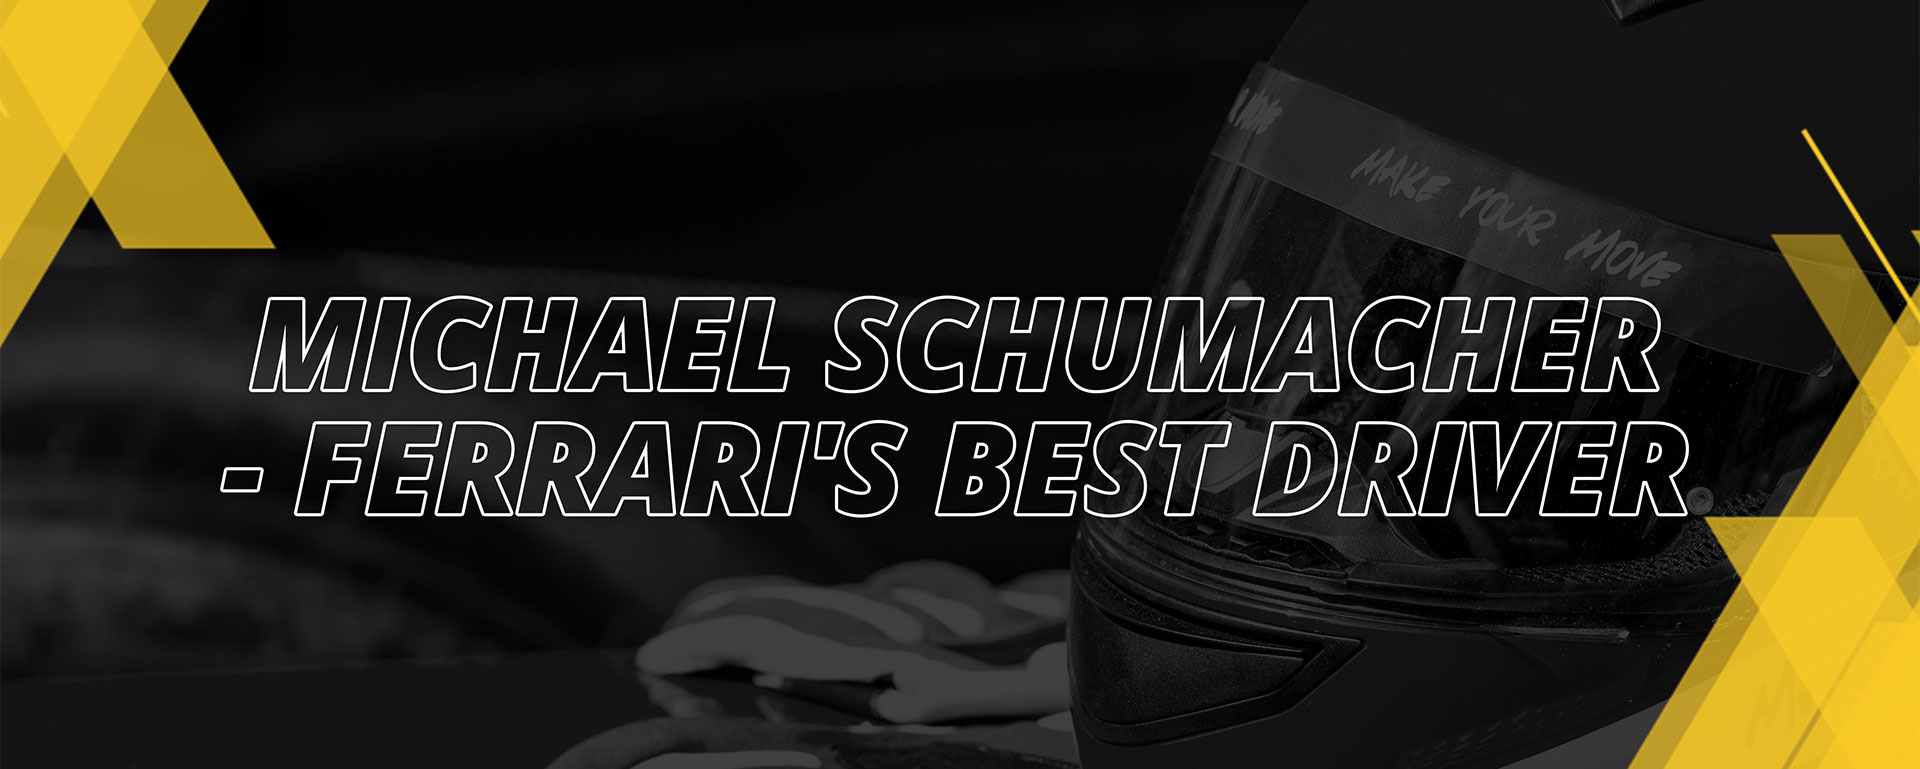 MICHAEL SCHUMACHER – FERRARI’S BEST DRIVER